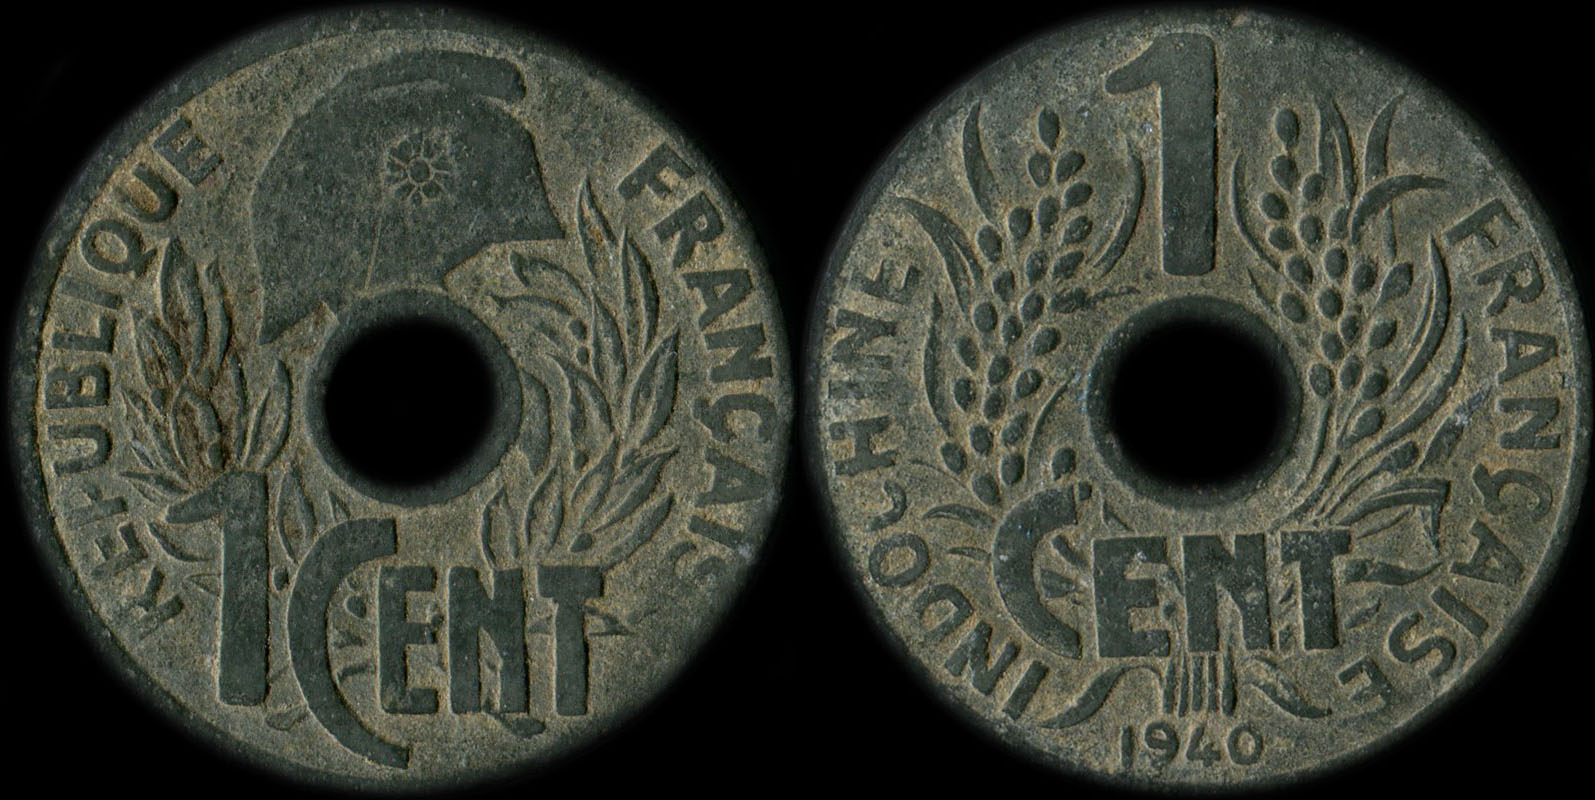 Pièce de 1 centième Indochine 1940 avec lotus